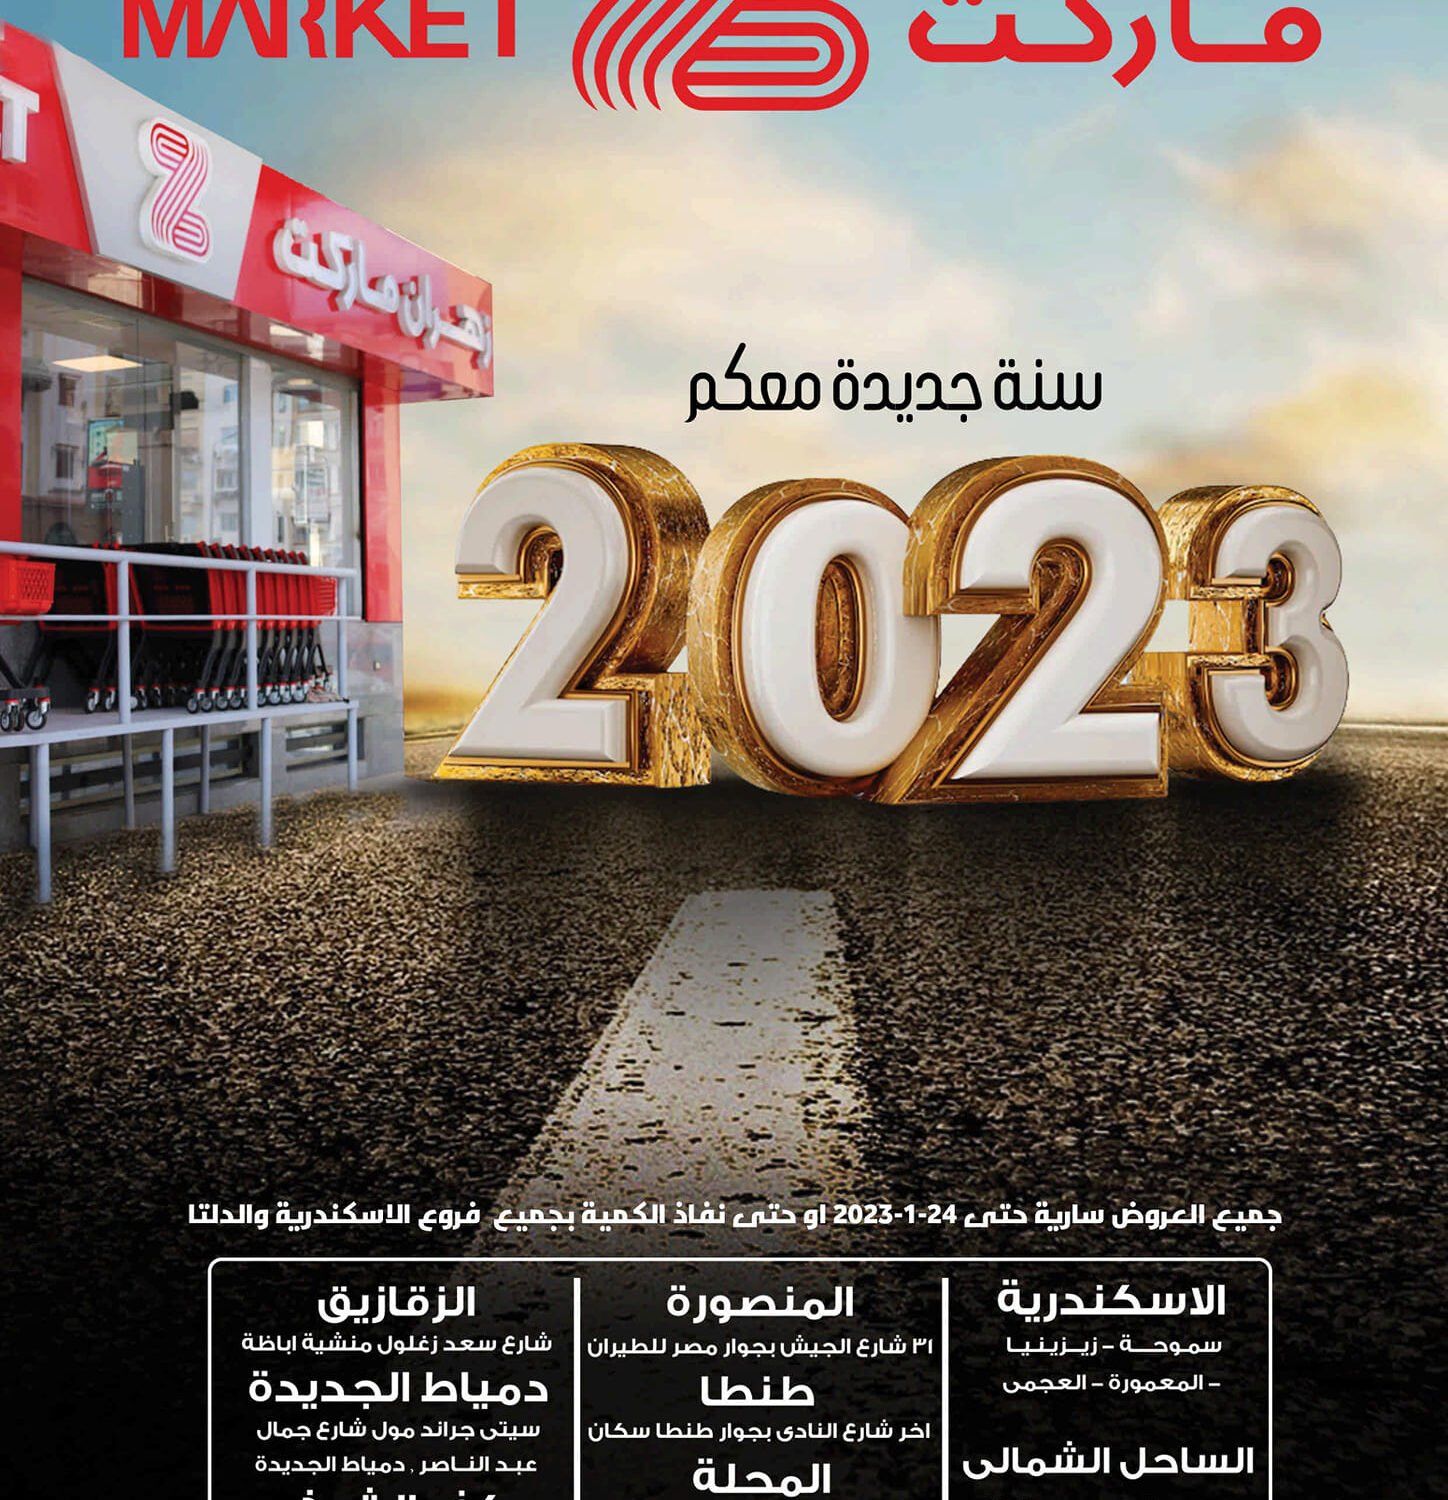 عروض زهران من 9 يناير حتى 24 يناير 2023